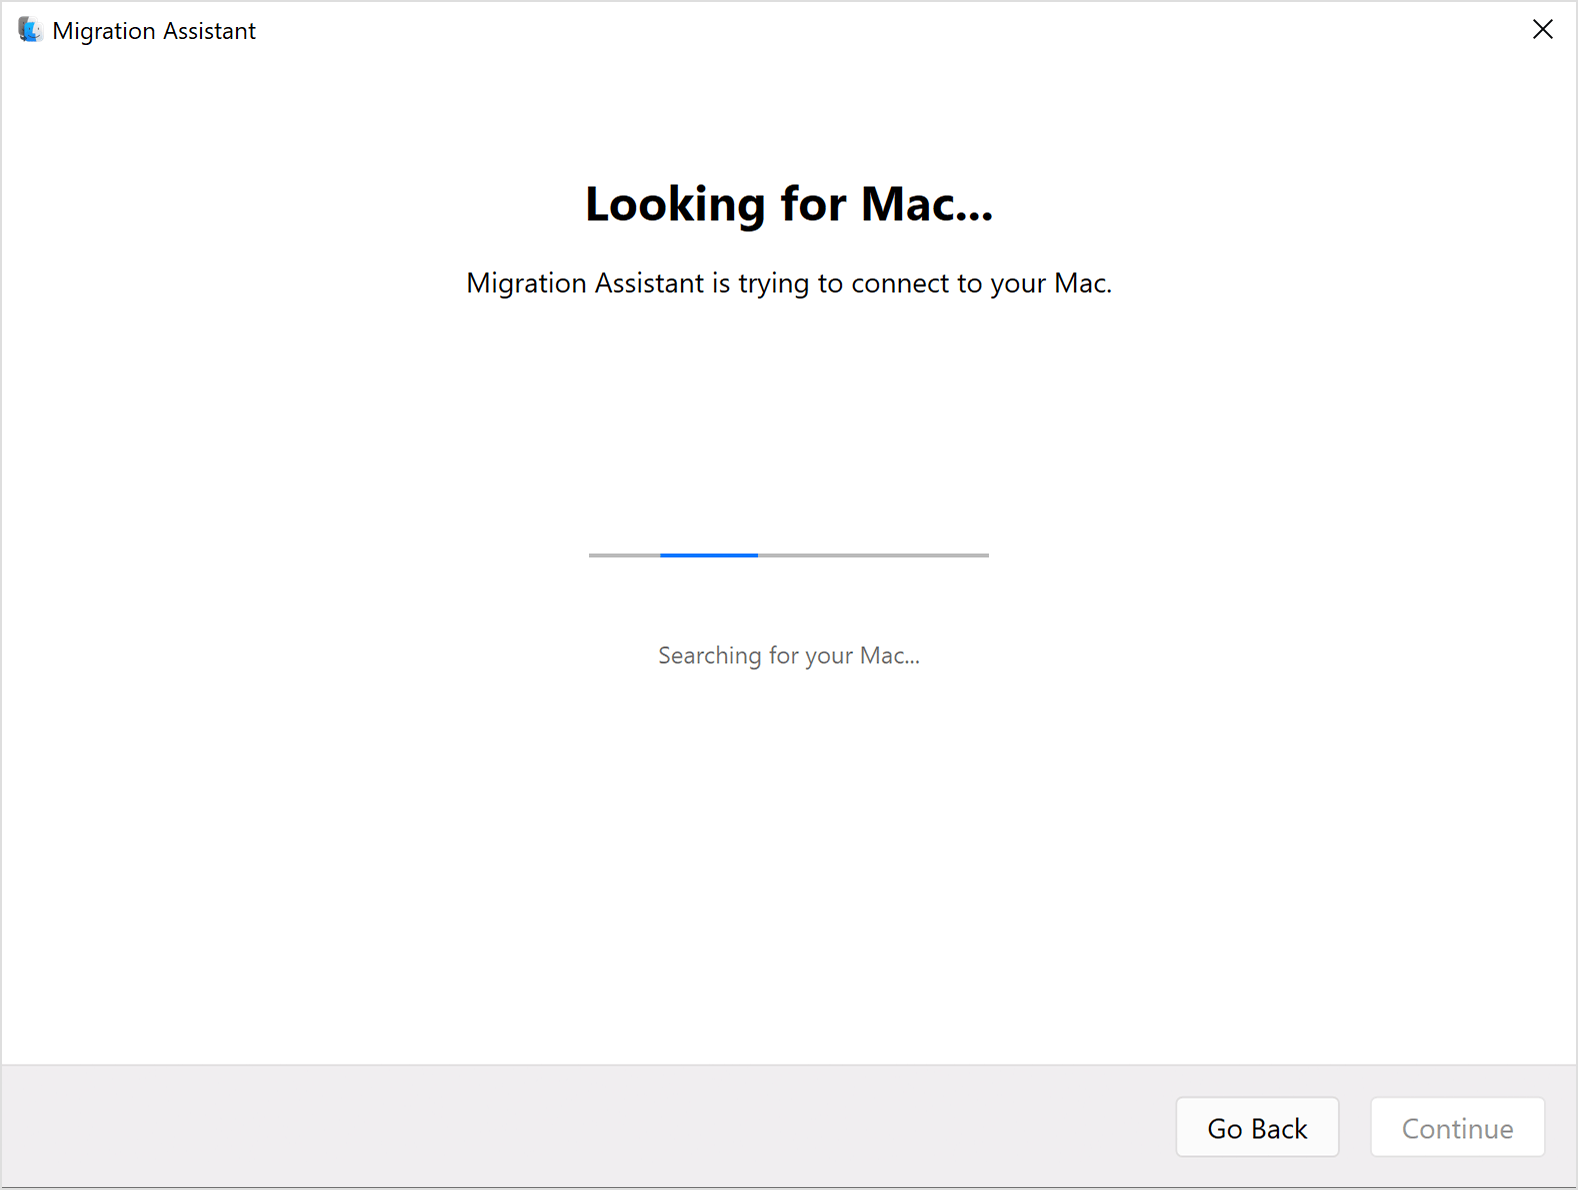 Migrationsassistent auf dem PC: Mac suchen ...